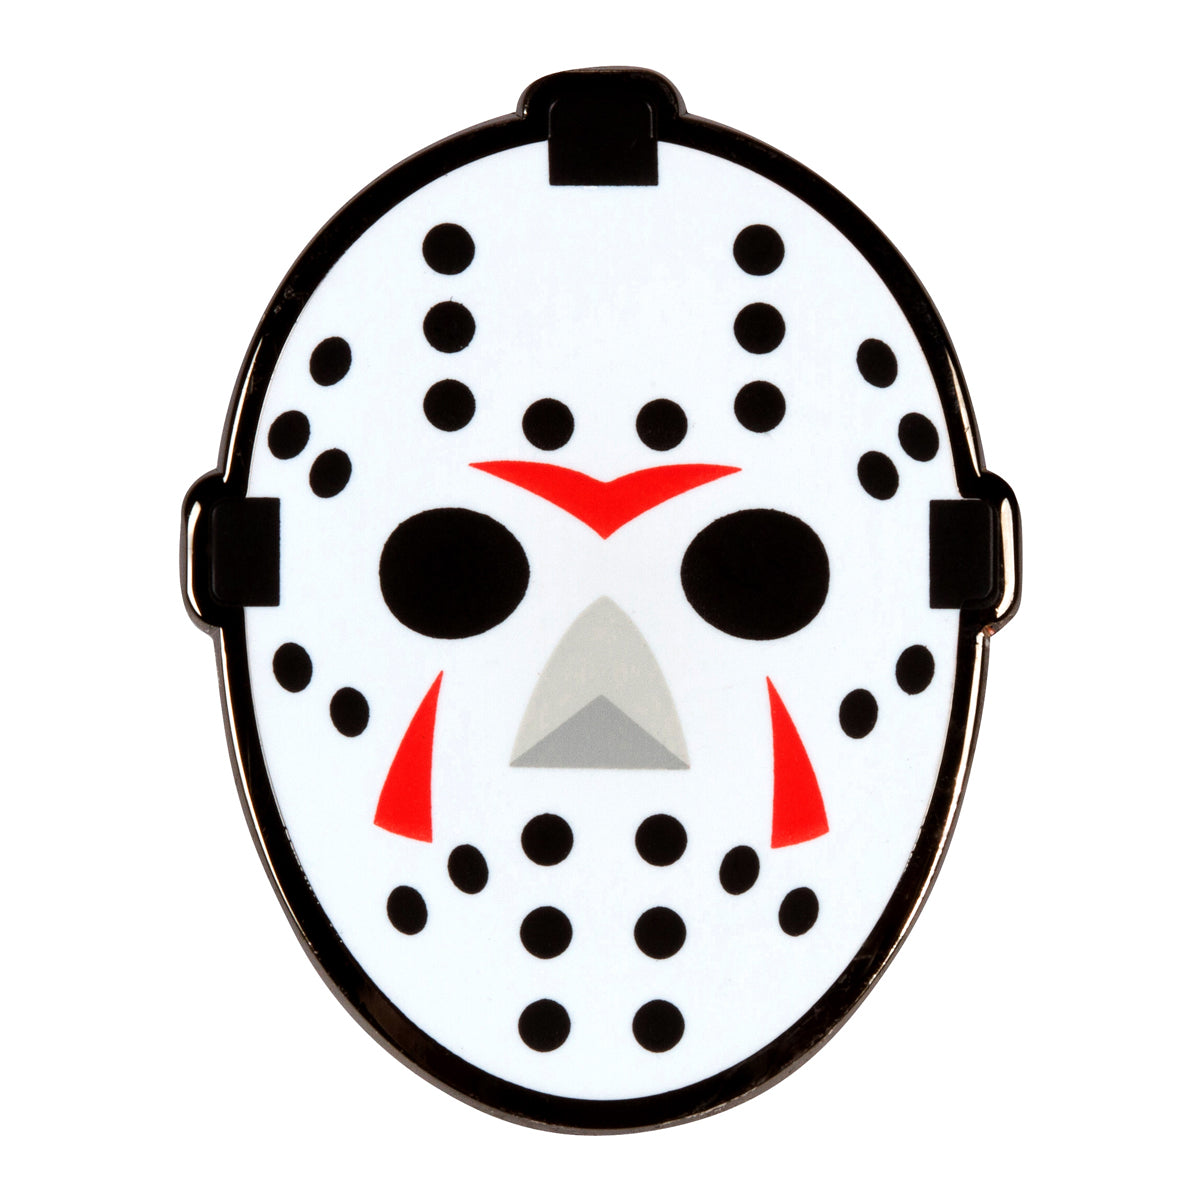 Pin on Goalie masks